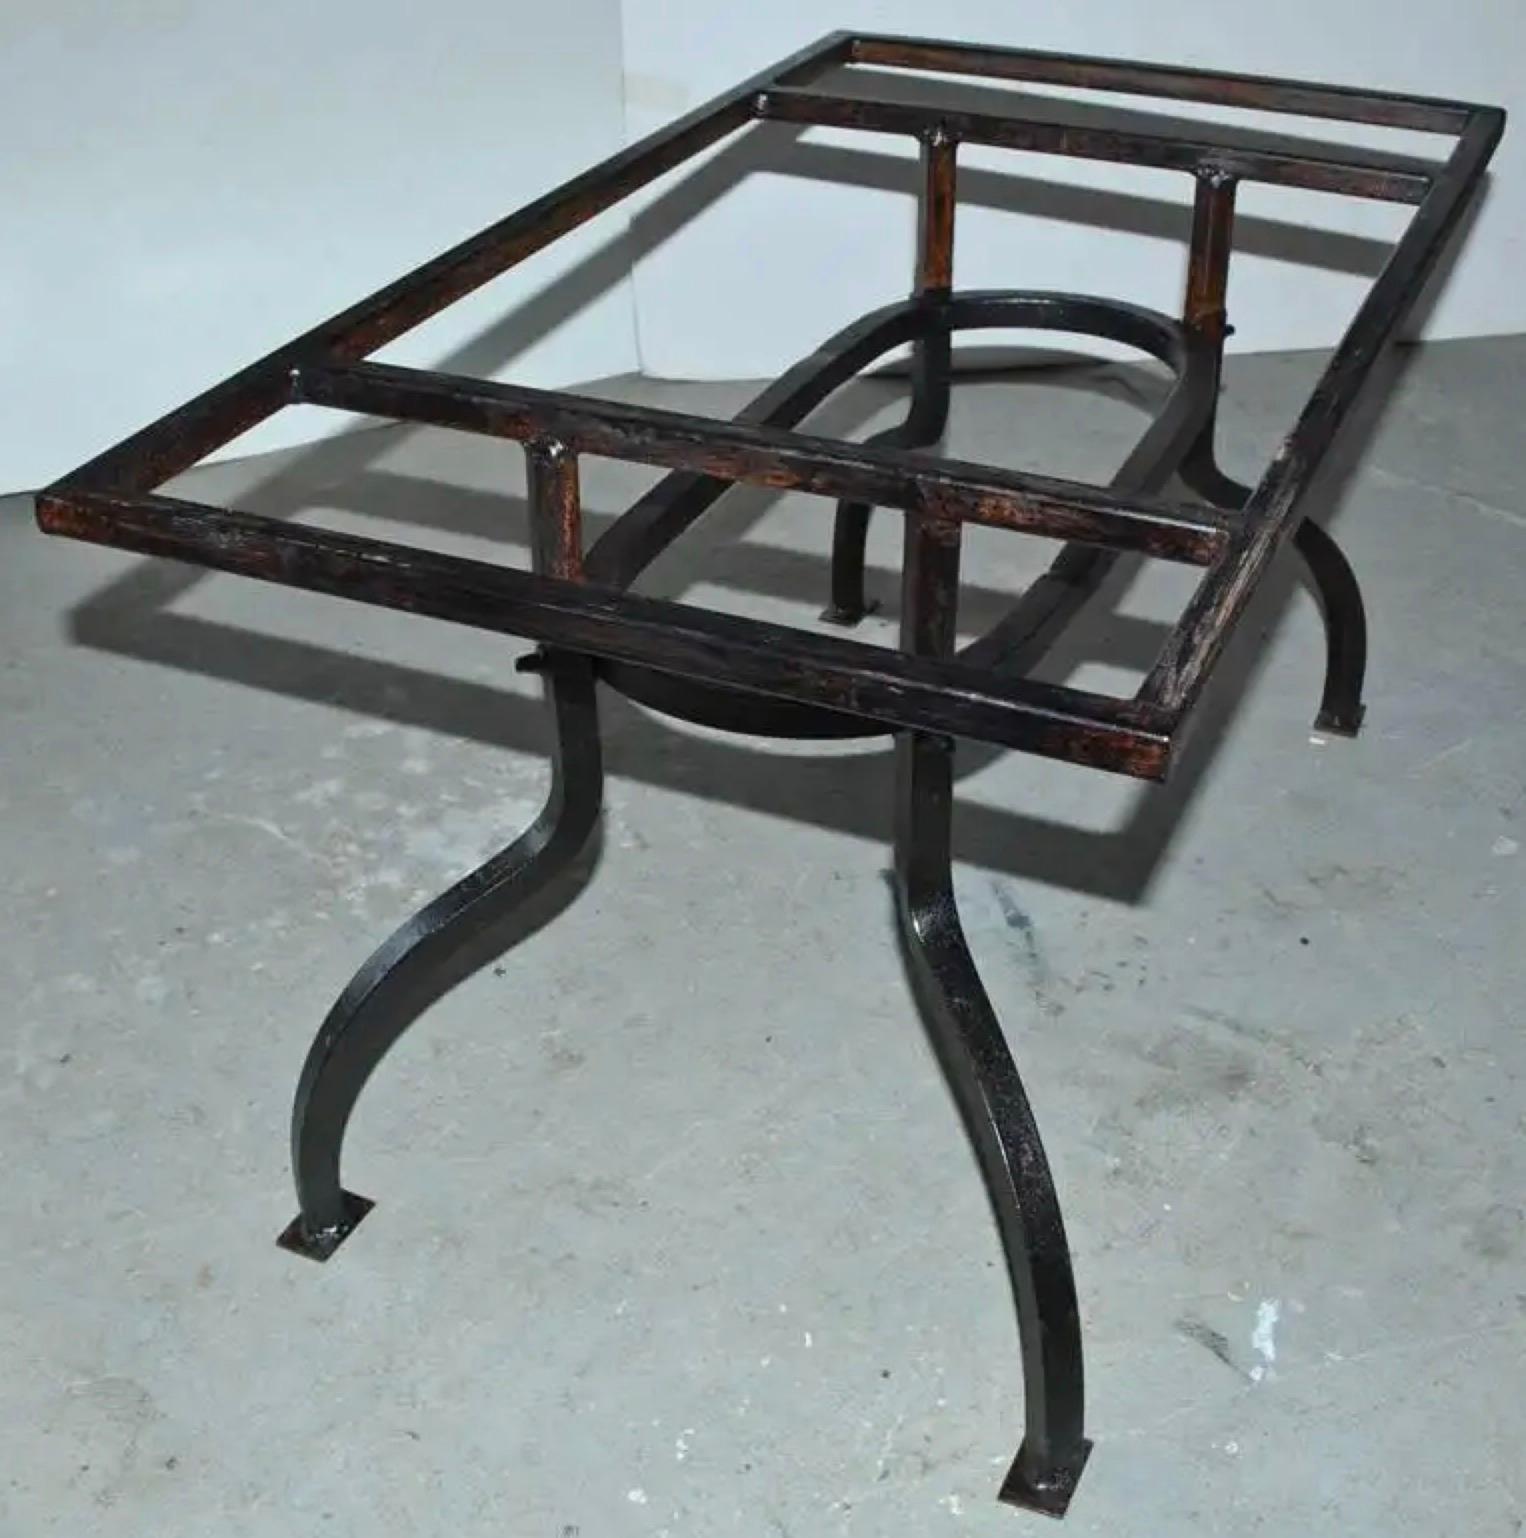 Rustikaler schmiedeeiserner Gartentisch mit bronzefarbenem Metallfuß für den Innen- oder Außenbereich, der von anmutig gebogenen Beinen gehalten wird, die unten mit gepolsterten Füßen abschließen.  Hervorragend geeignet für den Innen- und